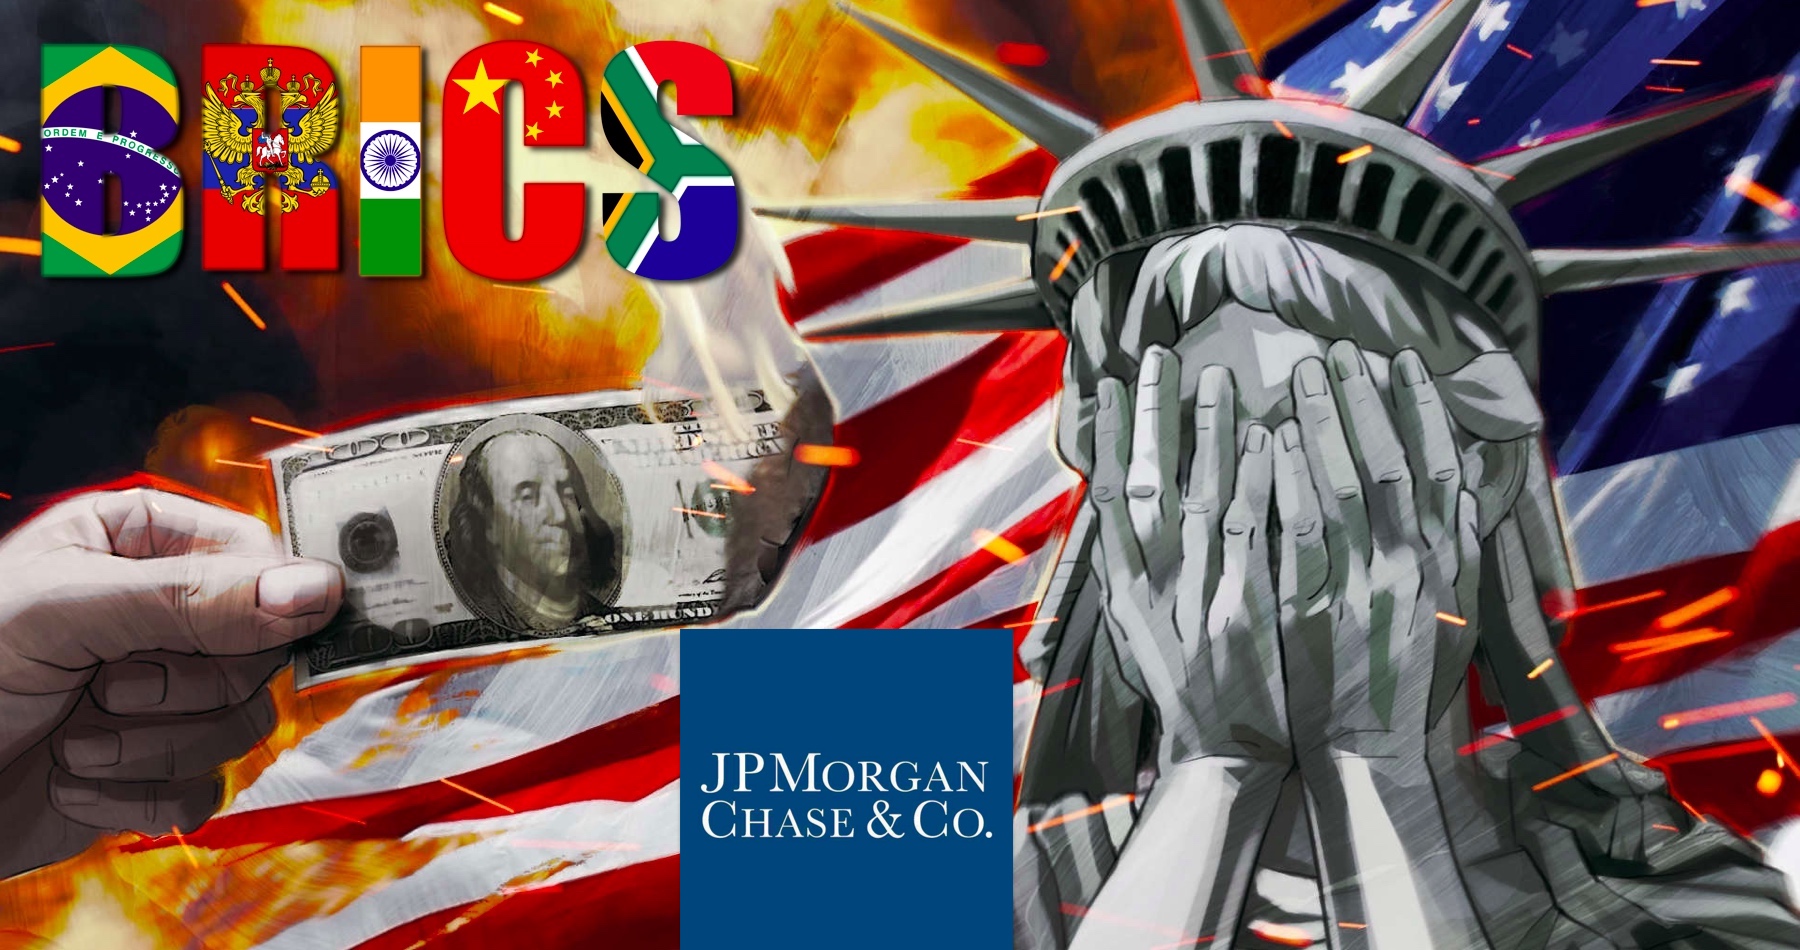 Svetová ekonomika začína vykazovať známky dedolarizácie, začínajú priznávať experti z najväčšej americkej banky JPMorgan